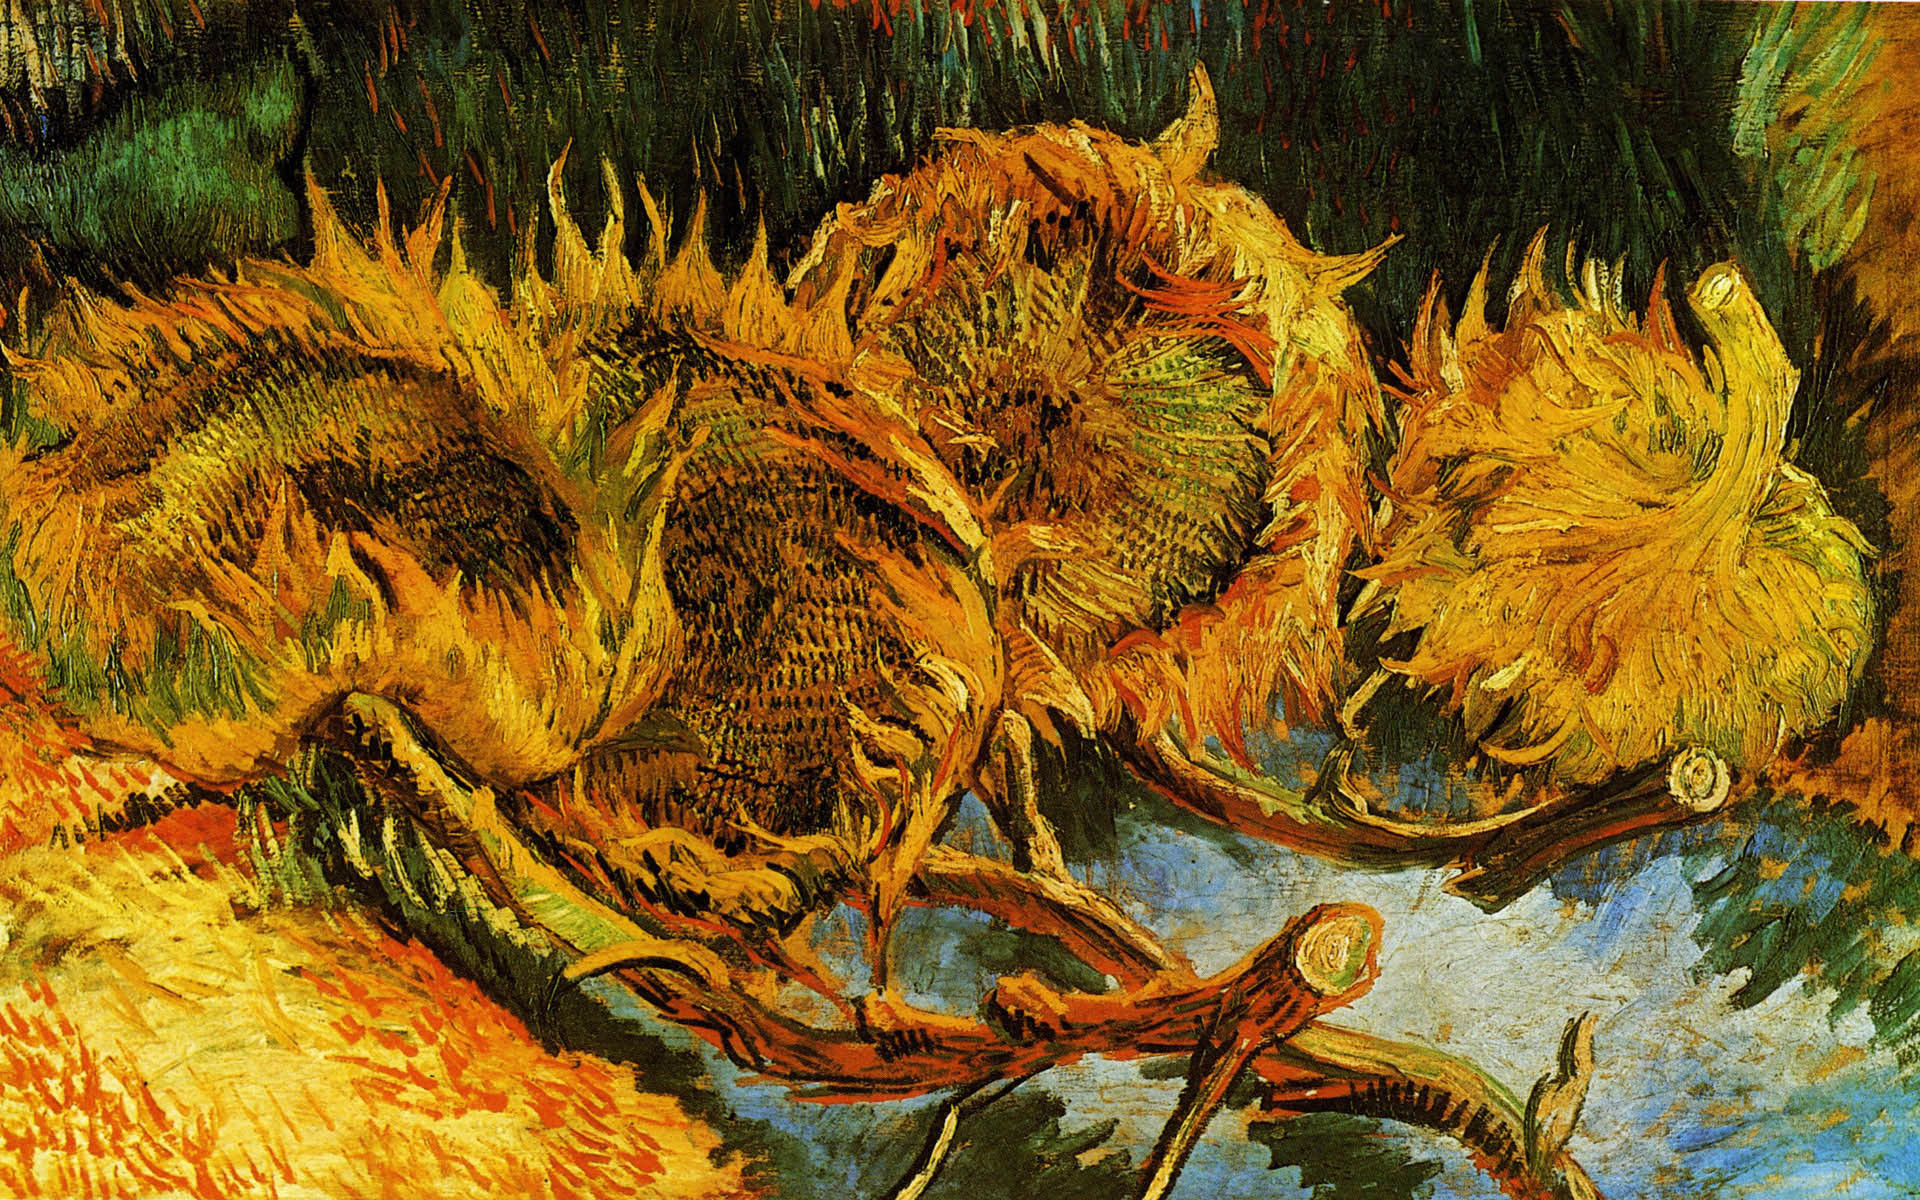 1920x1200 Van Gogh Wallpapers Â» Animaatjes.nl